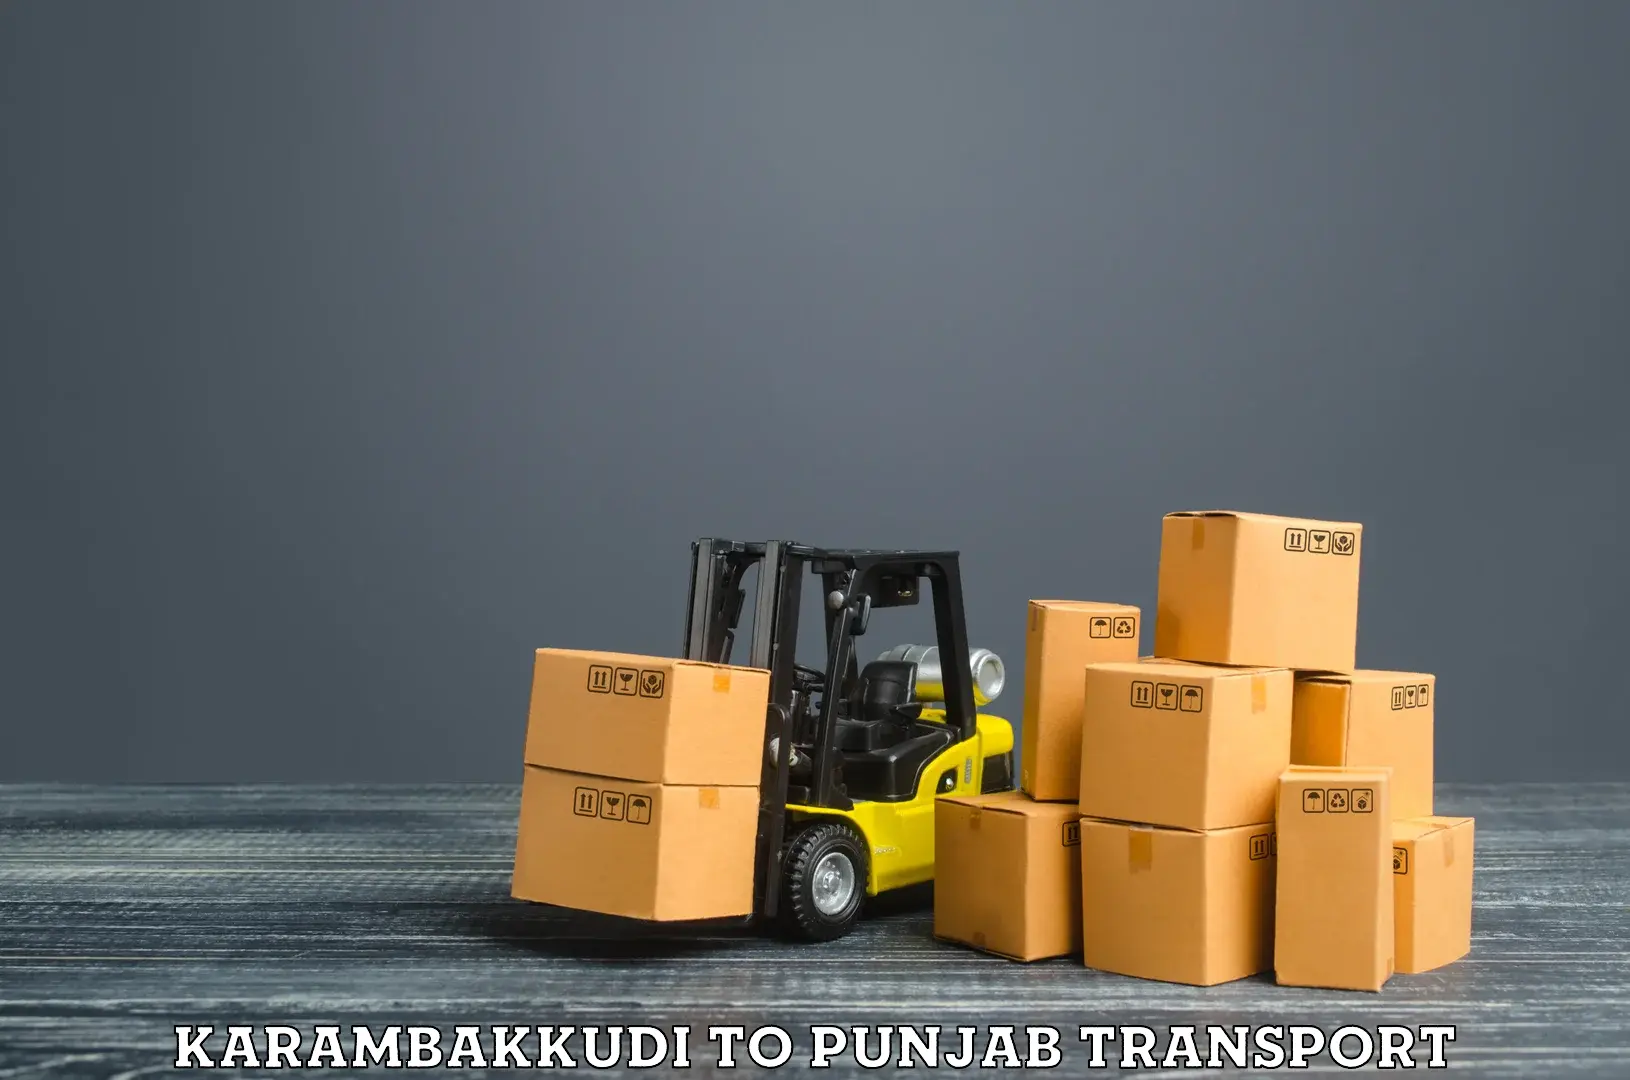 Furniture transport service in Karambakkudi to Mansa